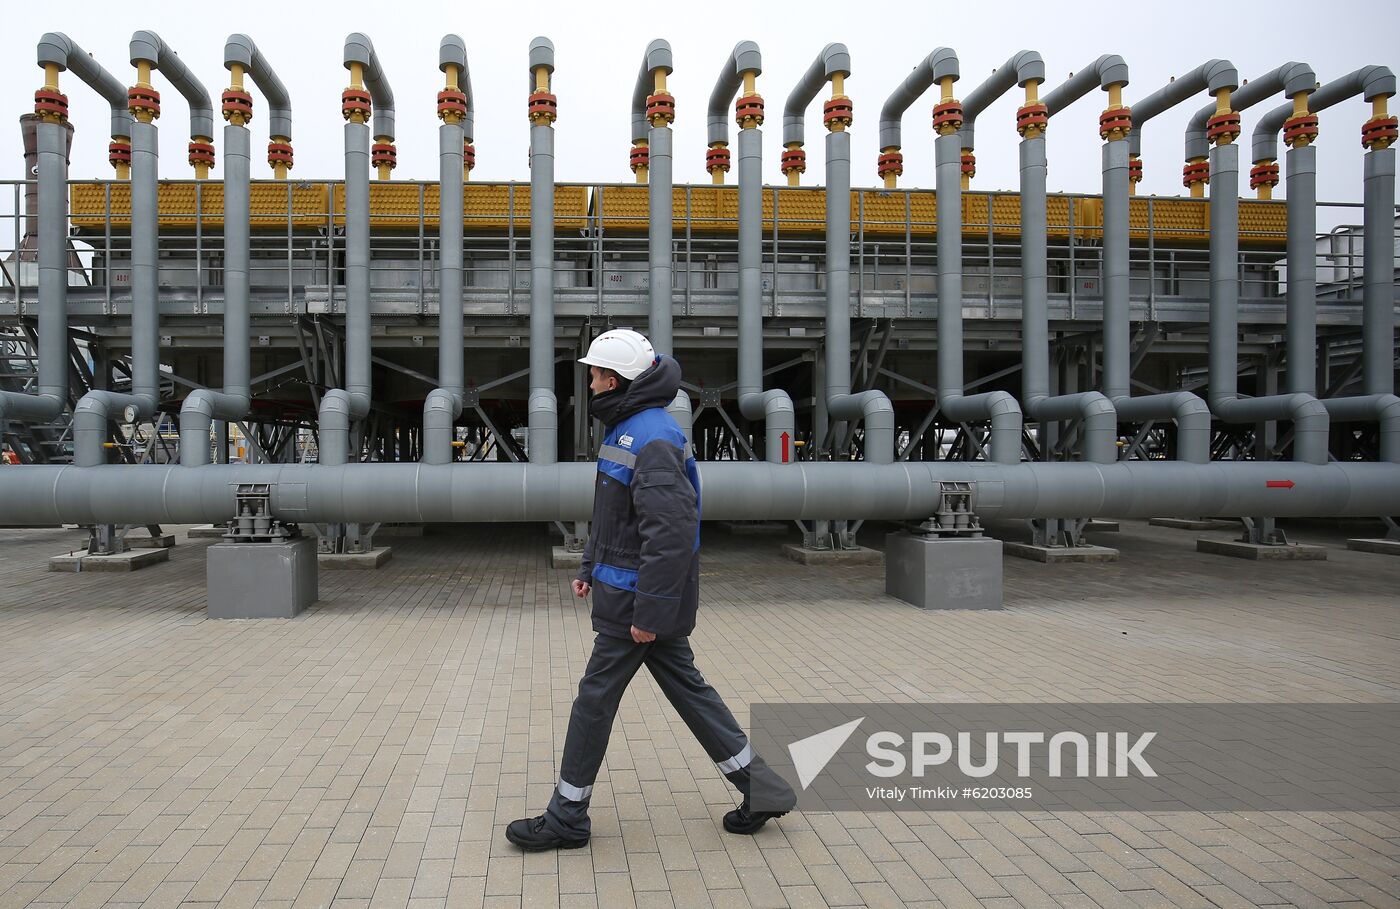 Russia TurkStream Pipeline